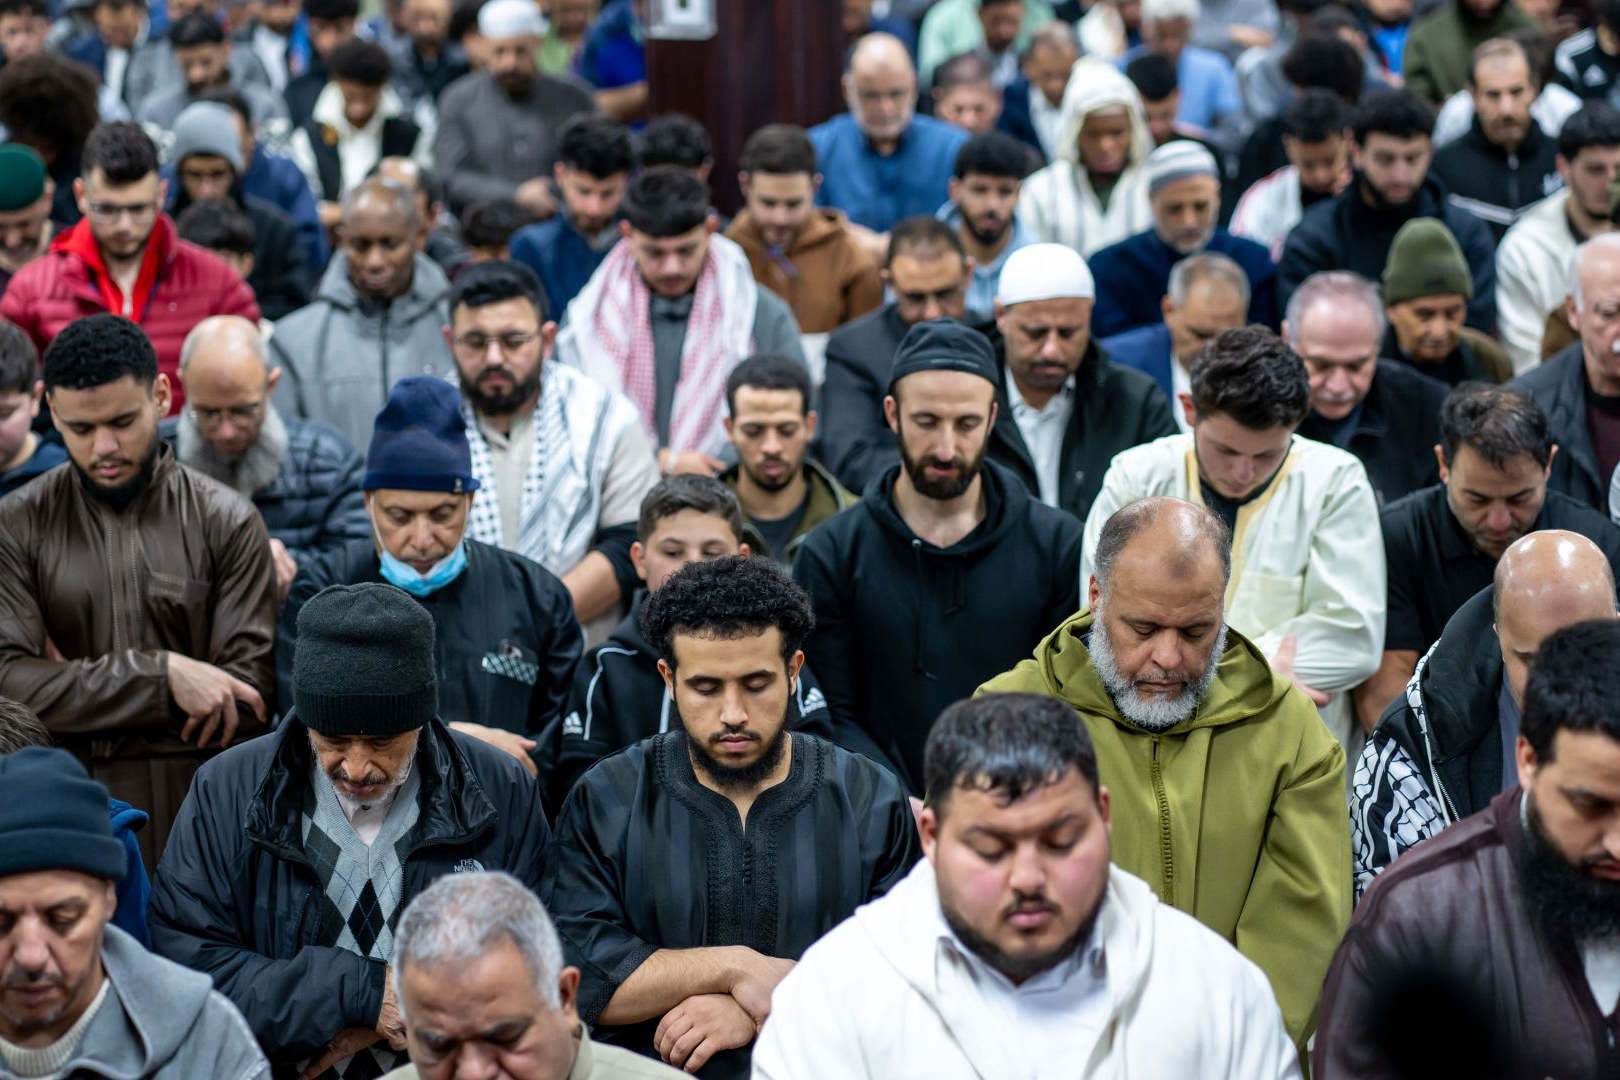 رمضان لا مثيل له.. أنظار المسلمين في ميشيغان مشدودة إلى غزة | التقارير الإخبارية – البوكس نيوز